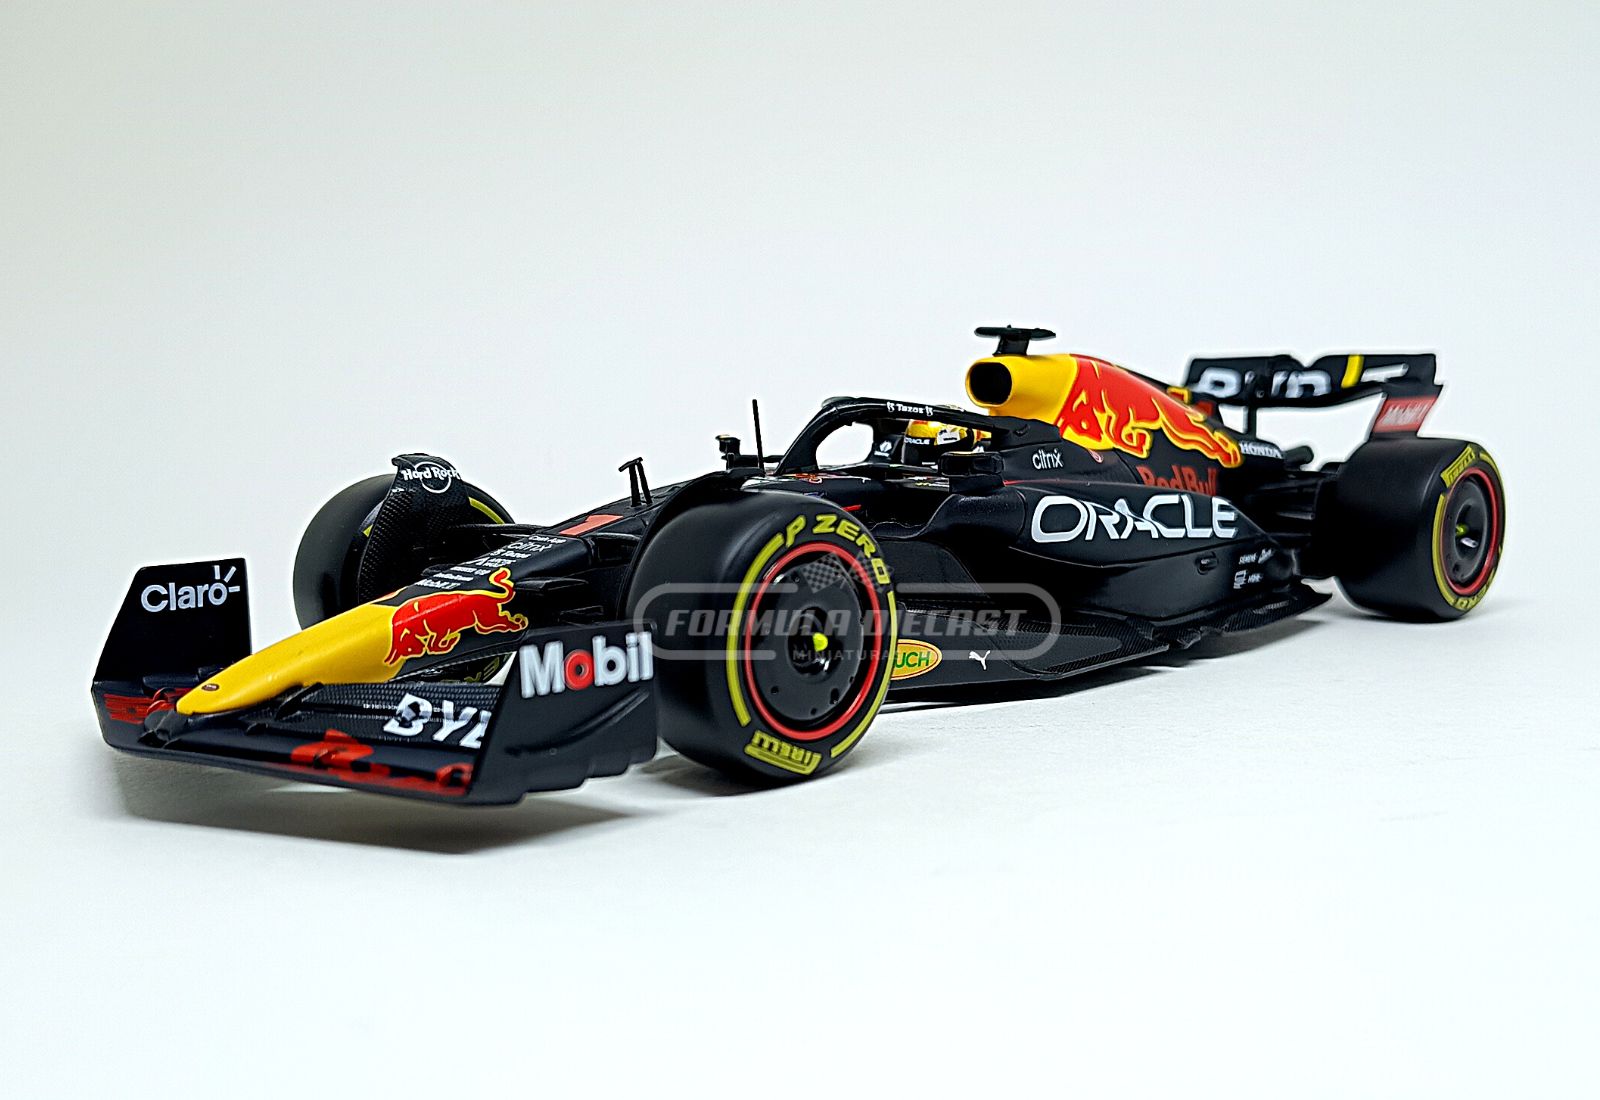 Miniatura de carro Red Bull RB18 #1 Max Verstappen, Campeão Mundial F1 2022, escala 1:24, marca Bburago